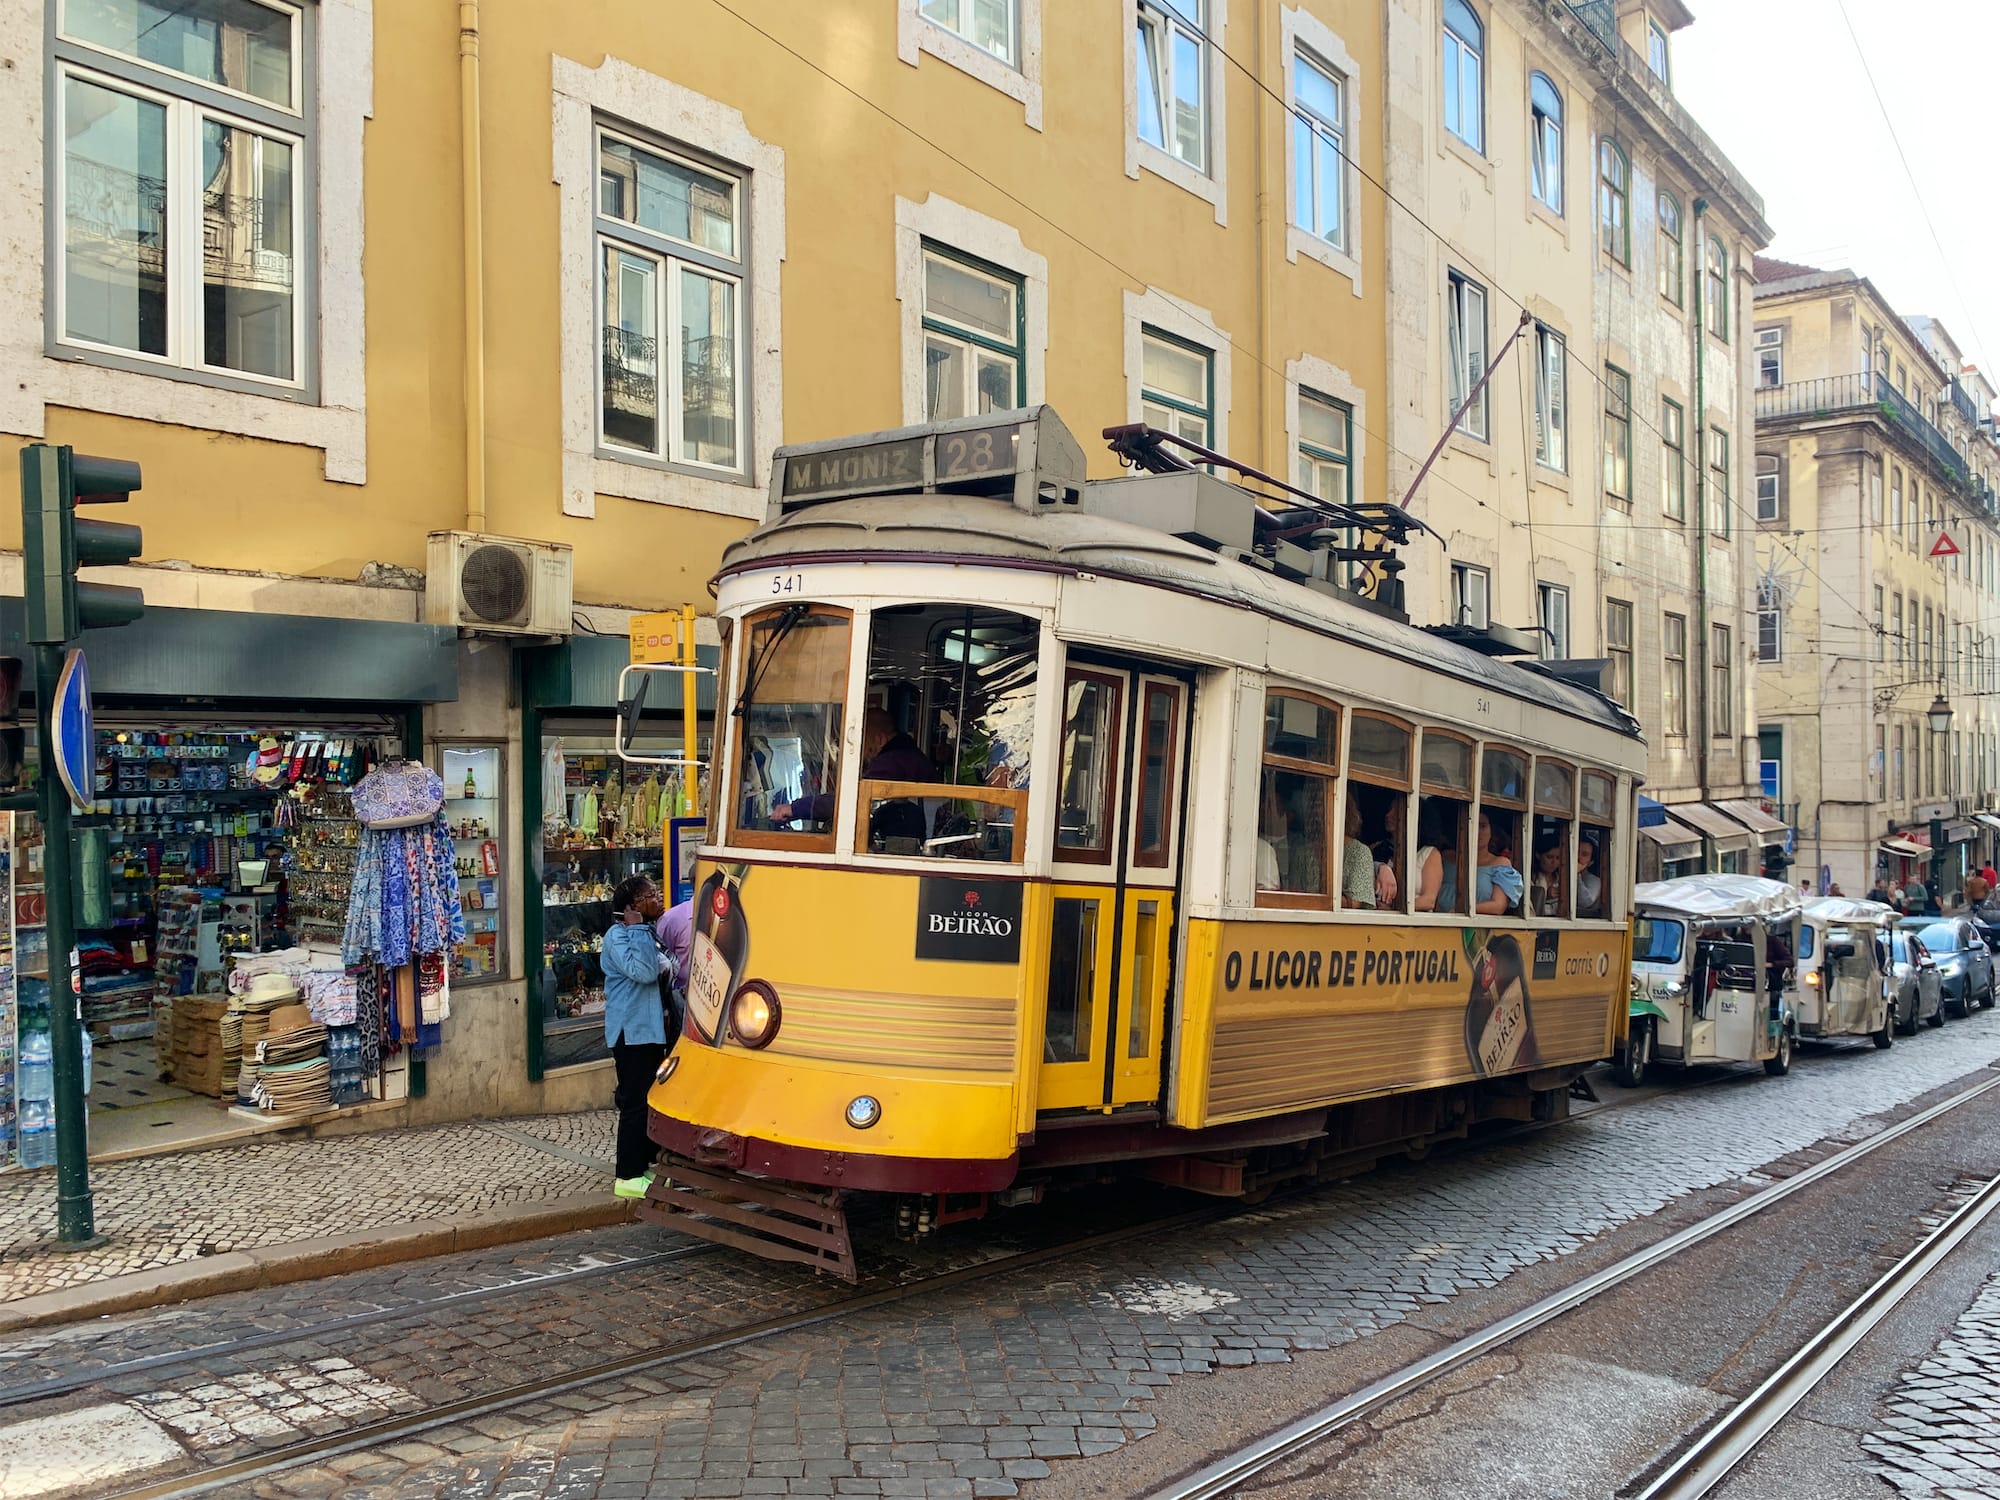 Lisbona, una città a misura di bambini